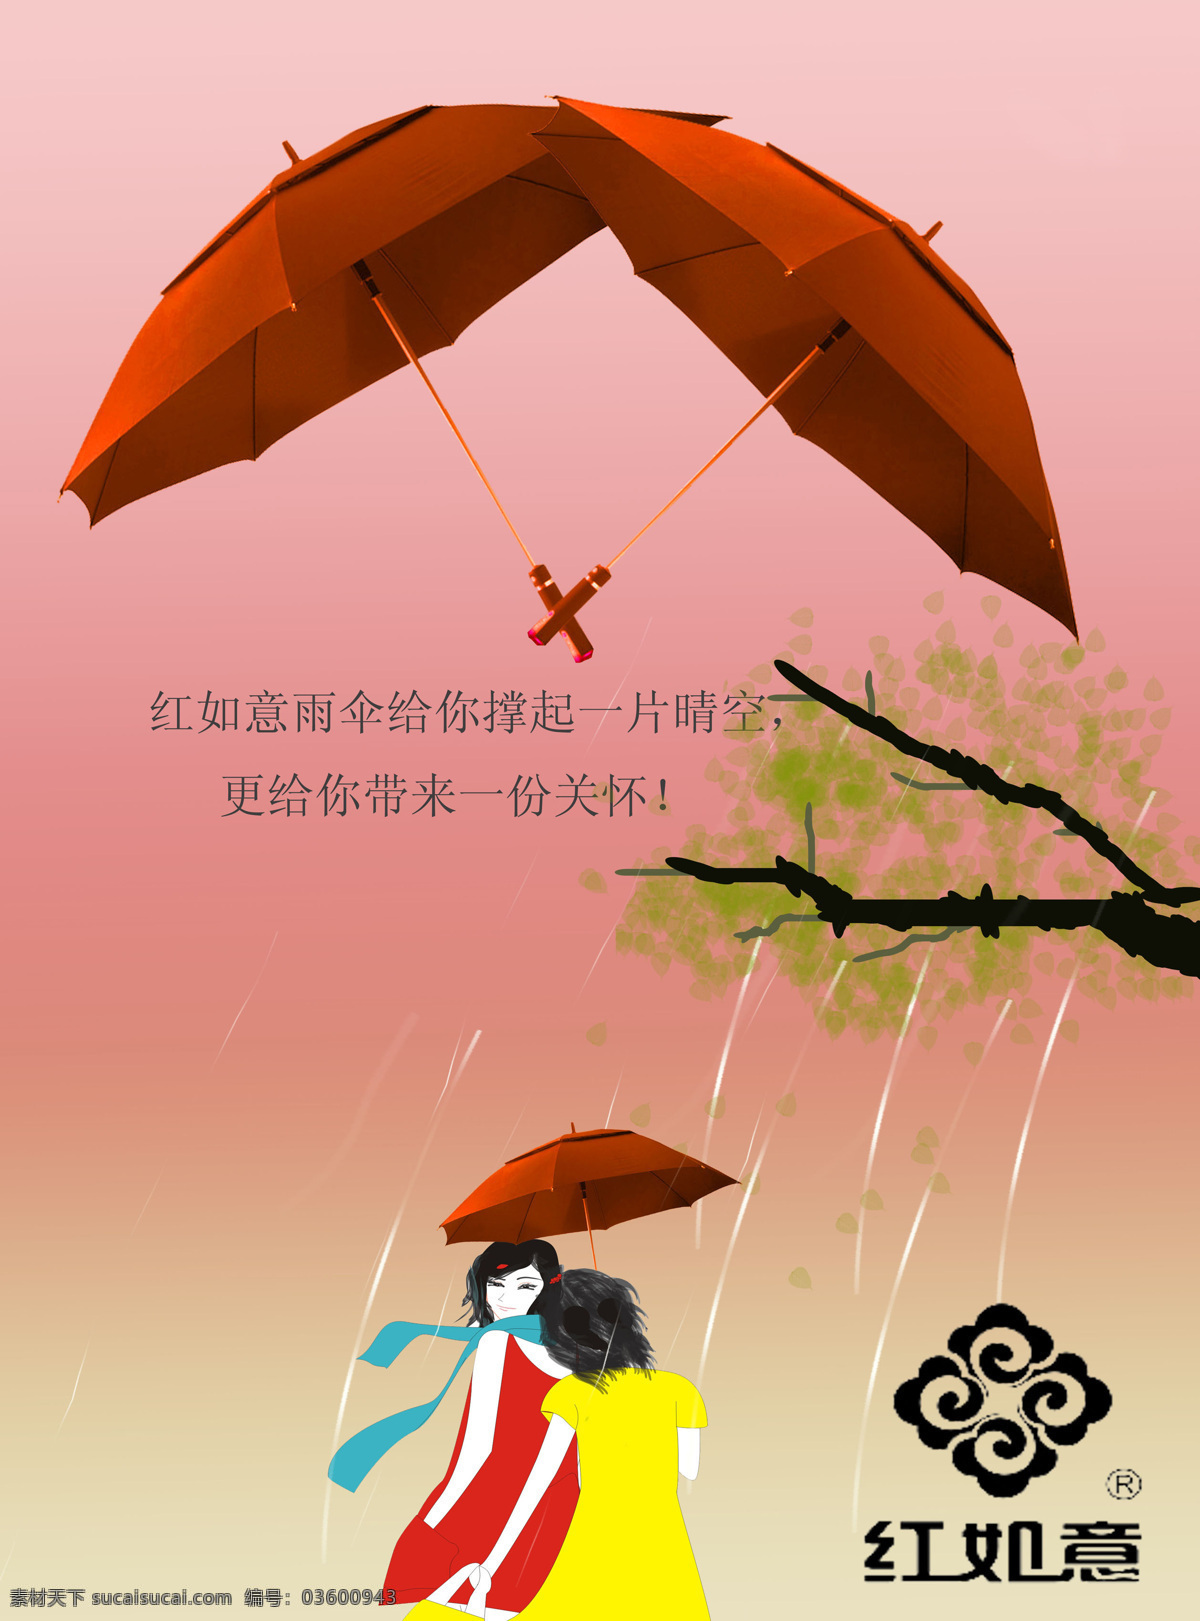 创意海报 创意海报设计 人物 雨伞 招贴设计 创意 设计素材 模板下载 雨景 psd源文件